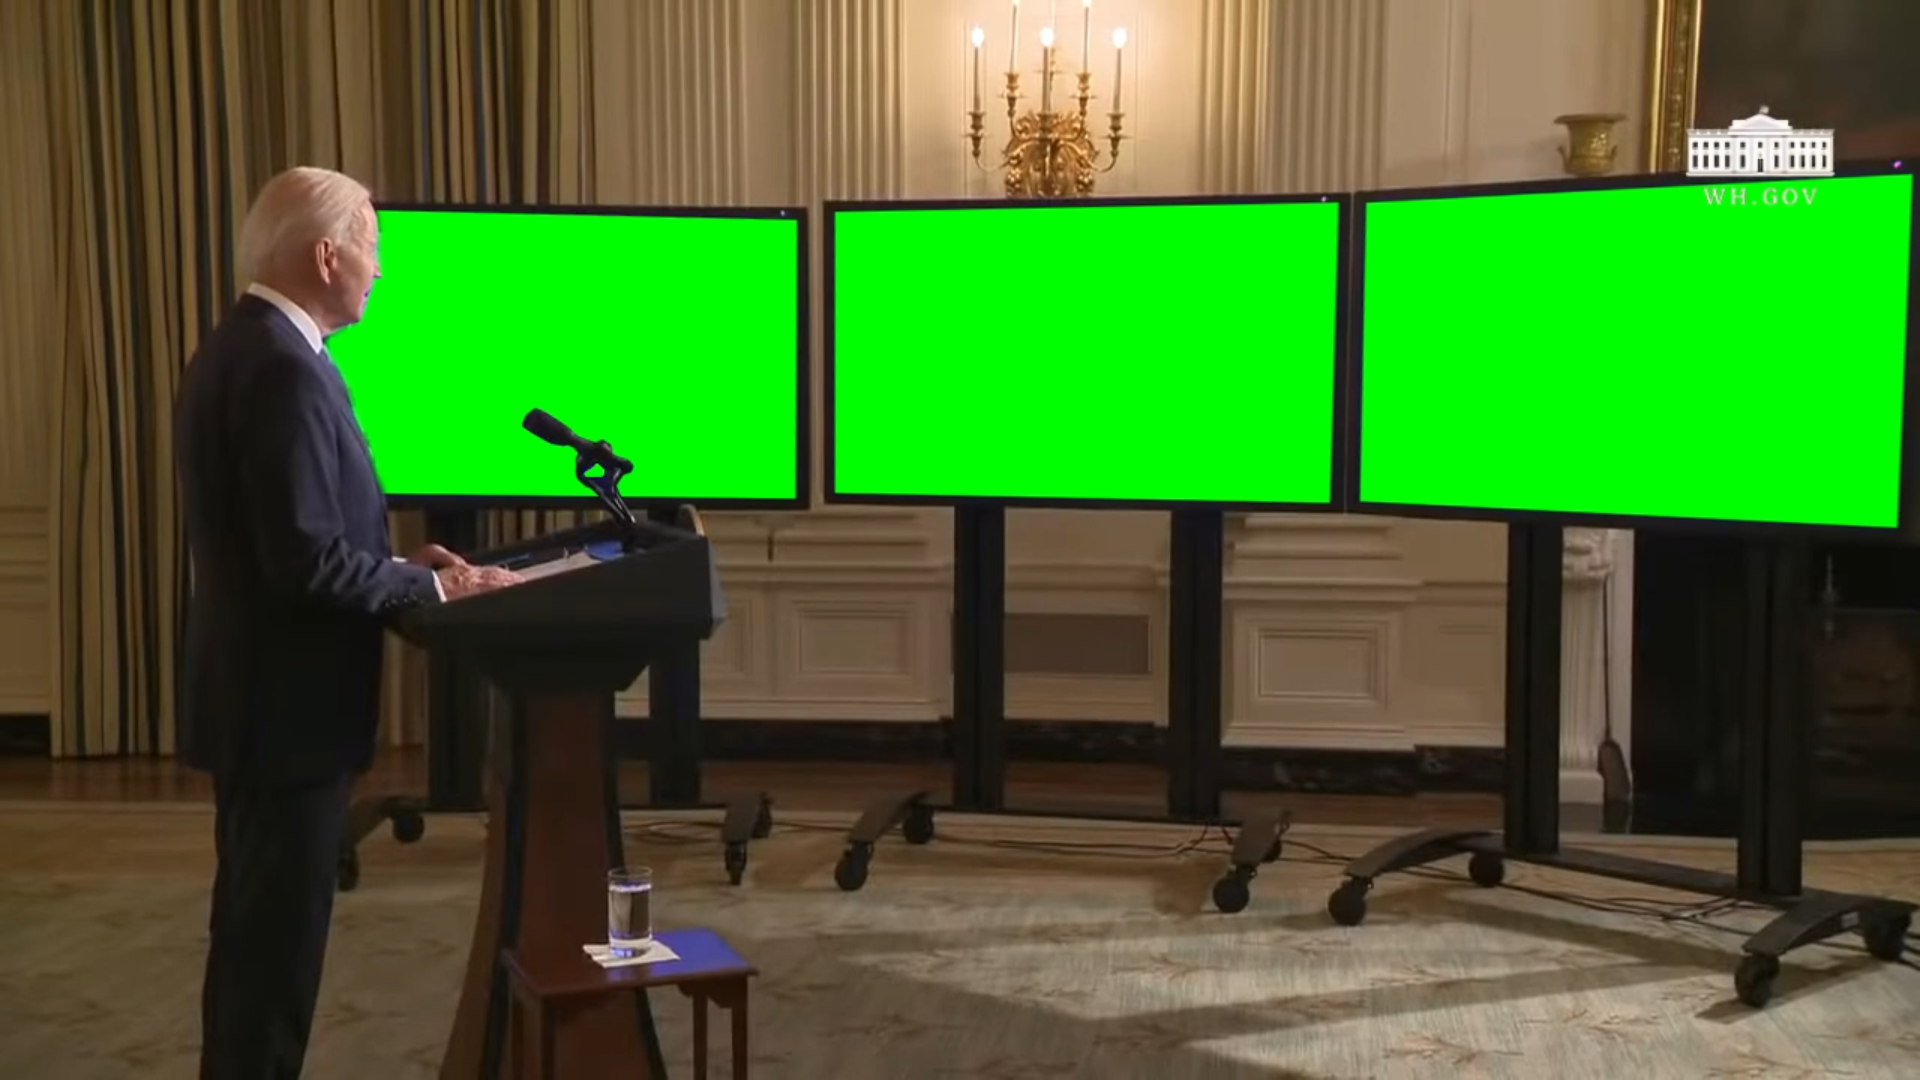 Joe Biden looking at 3 TV screens - Joe Biden Oath Taking (Green Screen)